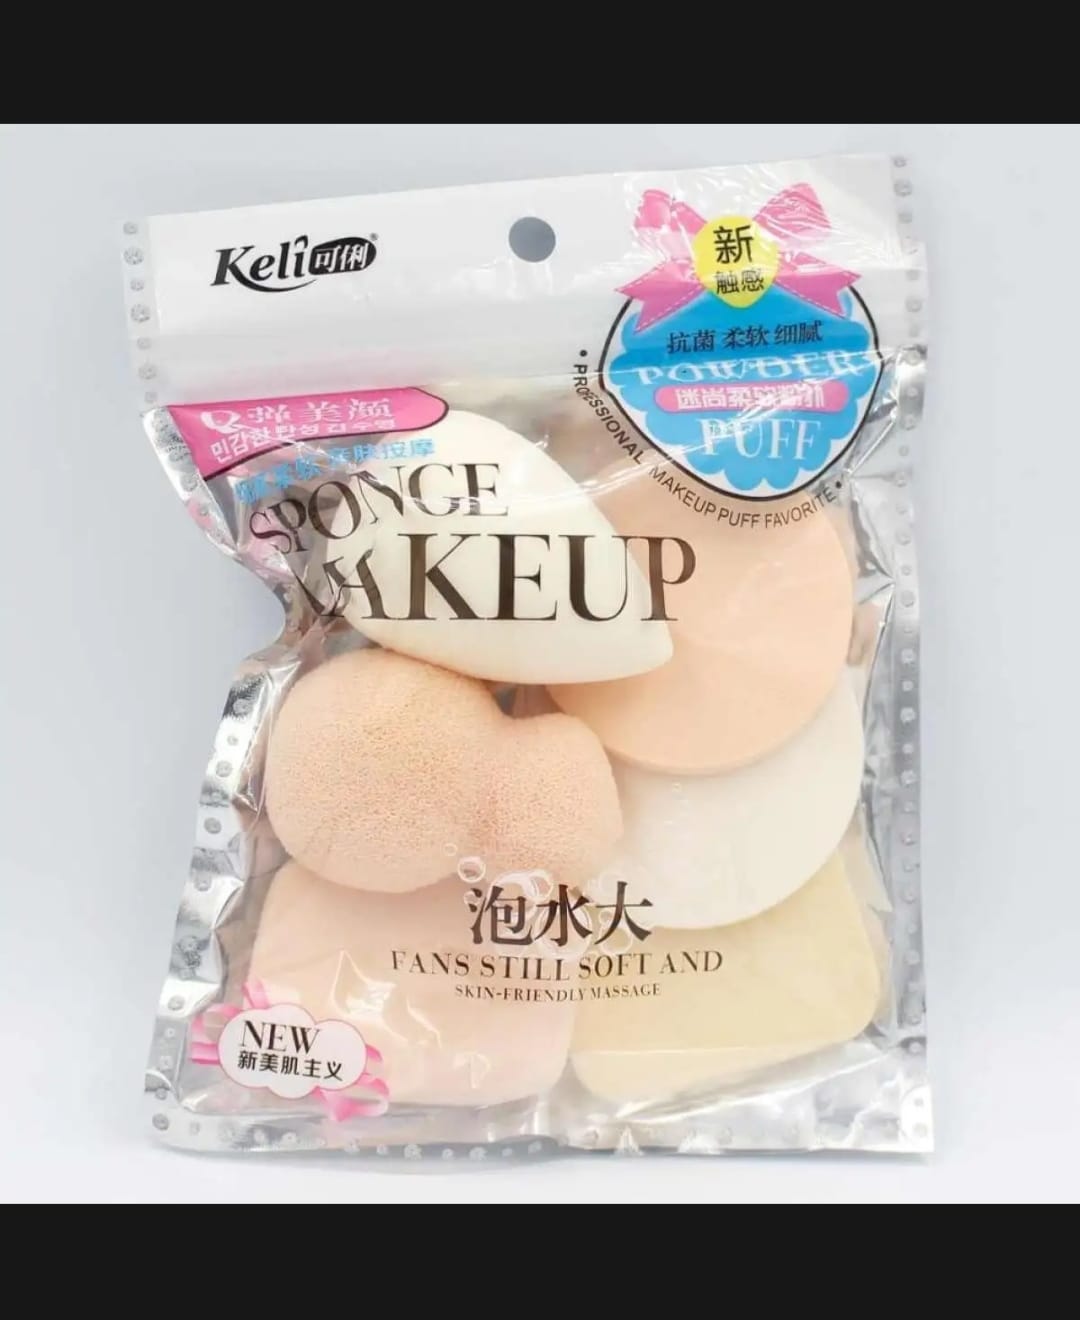 Multicolor Unisex Keli Beauty Blender Makeup Sponge Set, For